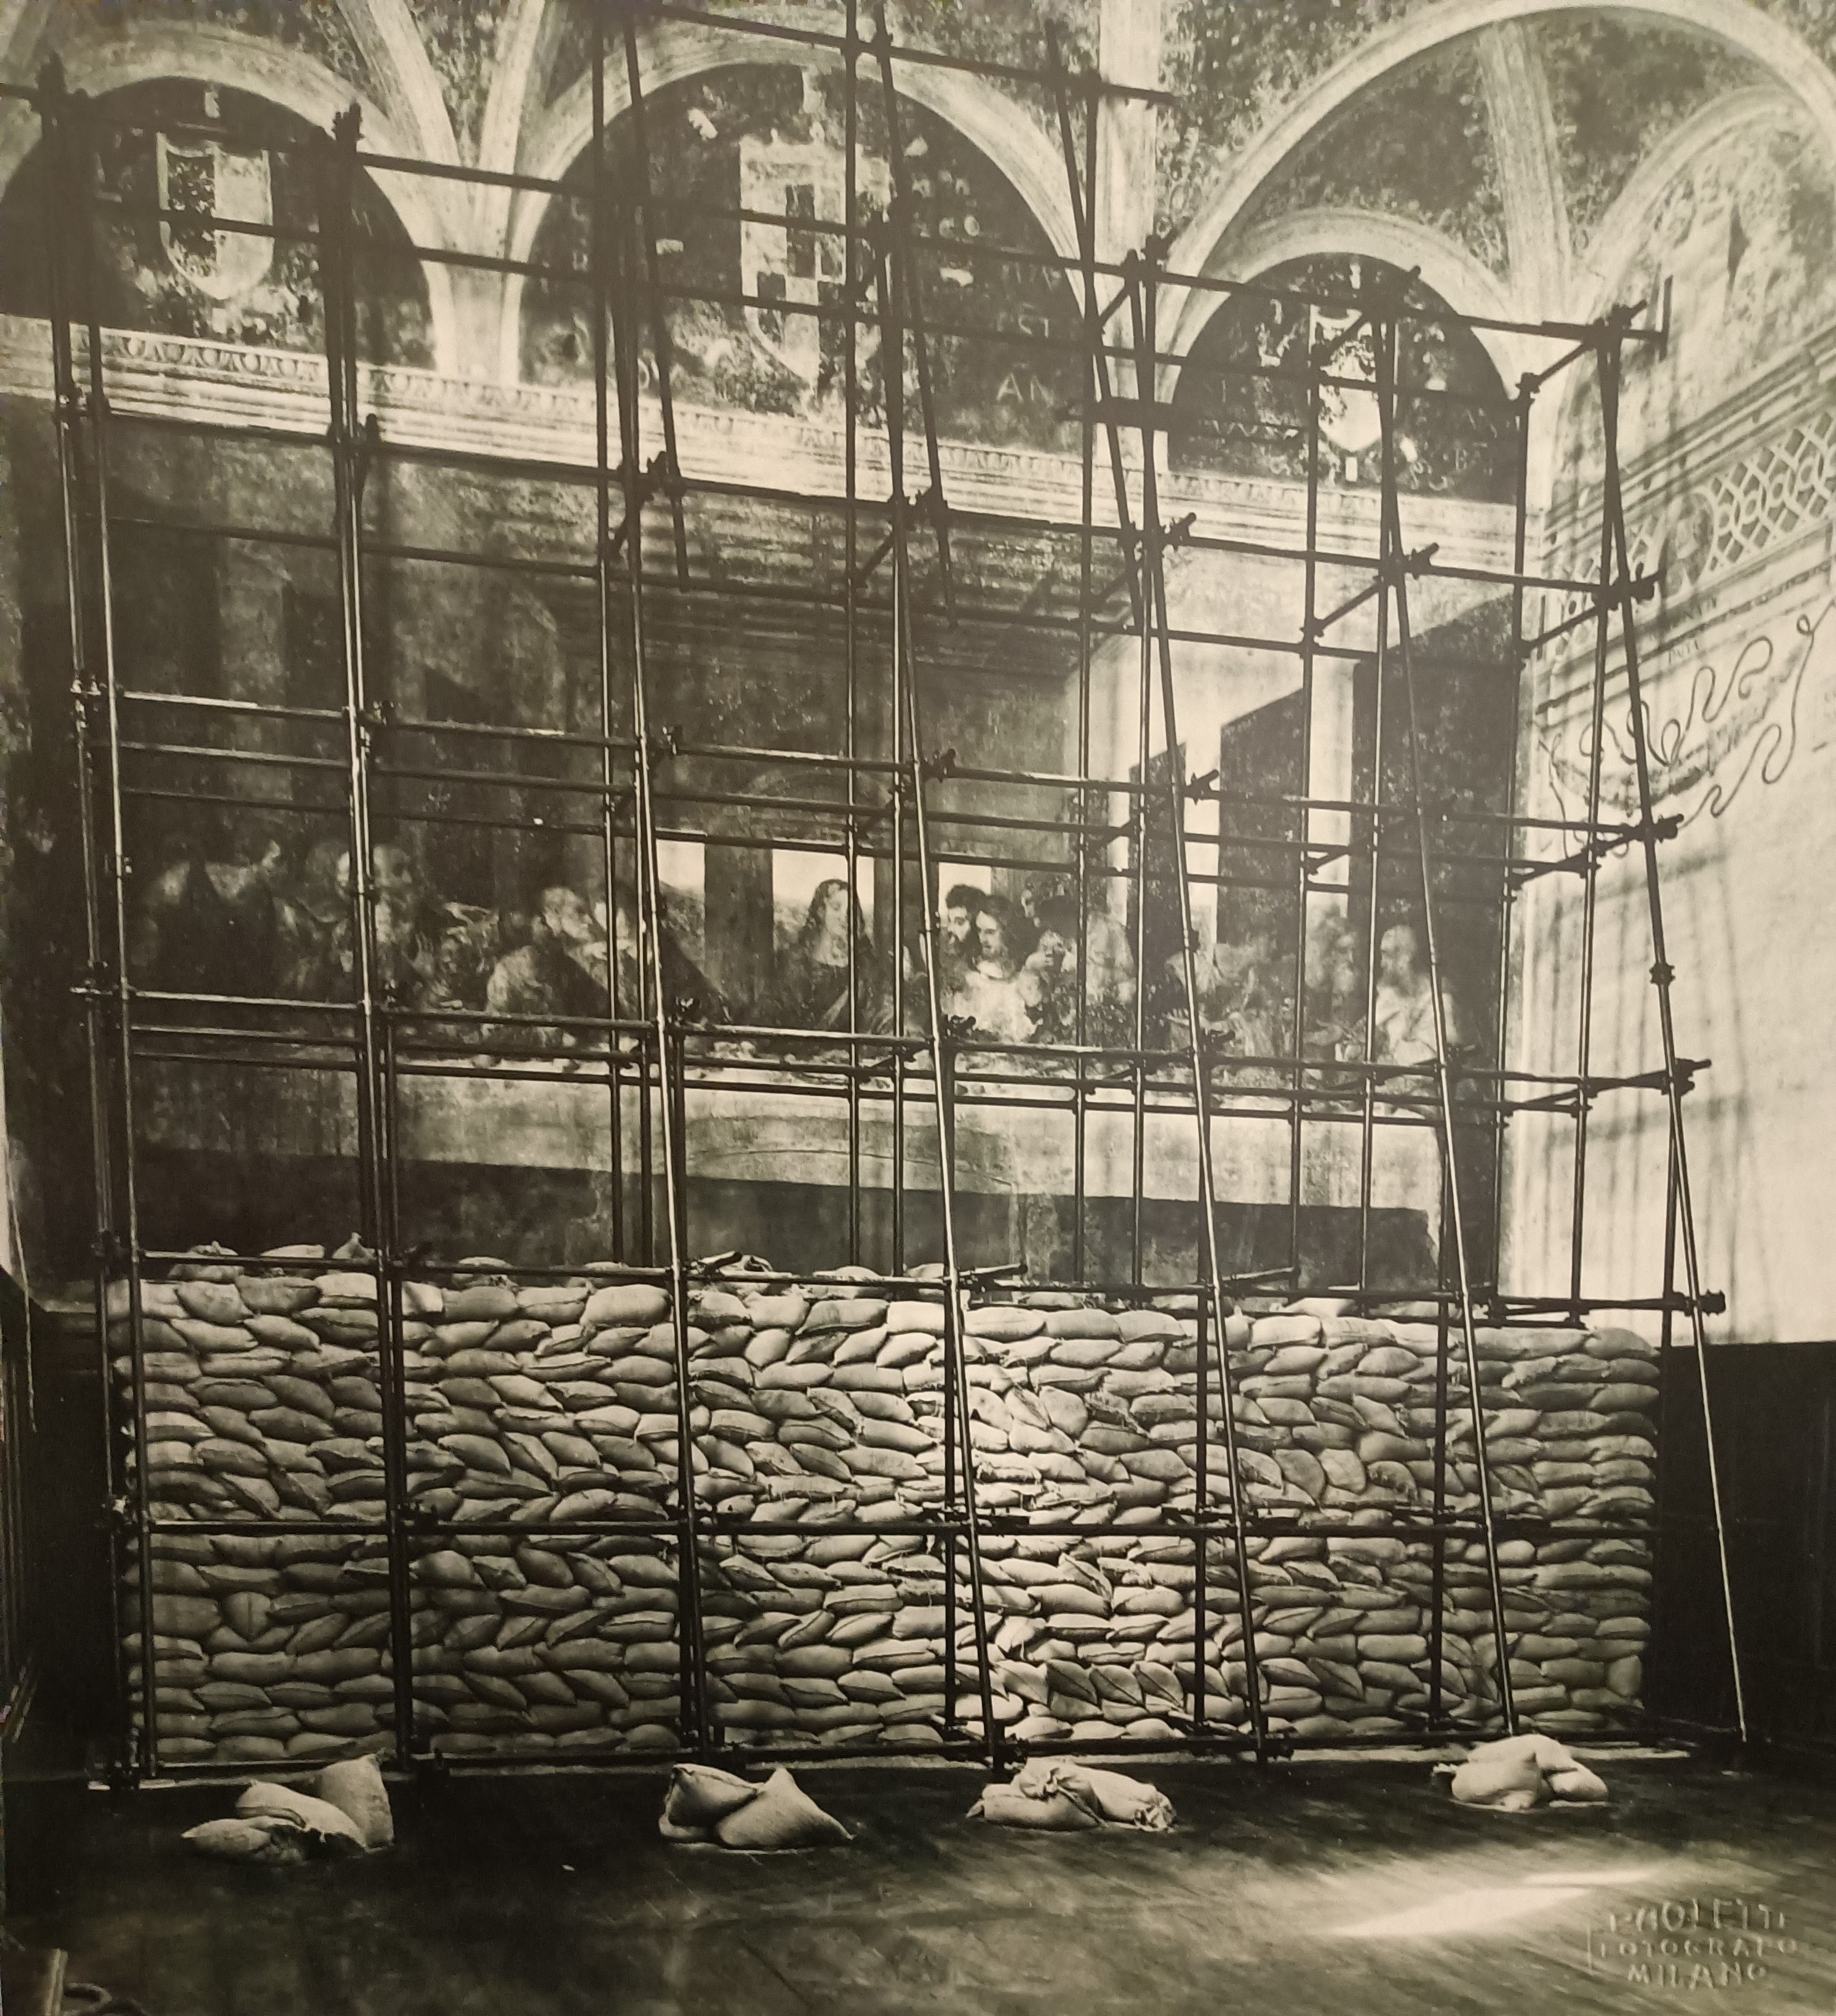 Σάκοι με άμμο για την προστασία του Μυστικού Δείπνου, 1940, Φωτογραφία: Paoletti, Φωτογραφικό Αρχείο SABAP Μιλάνου